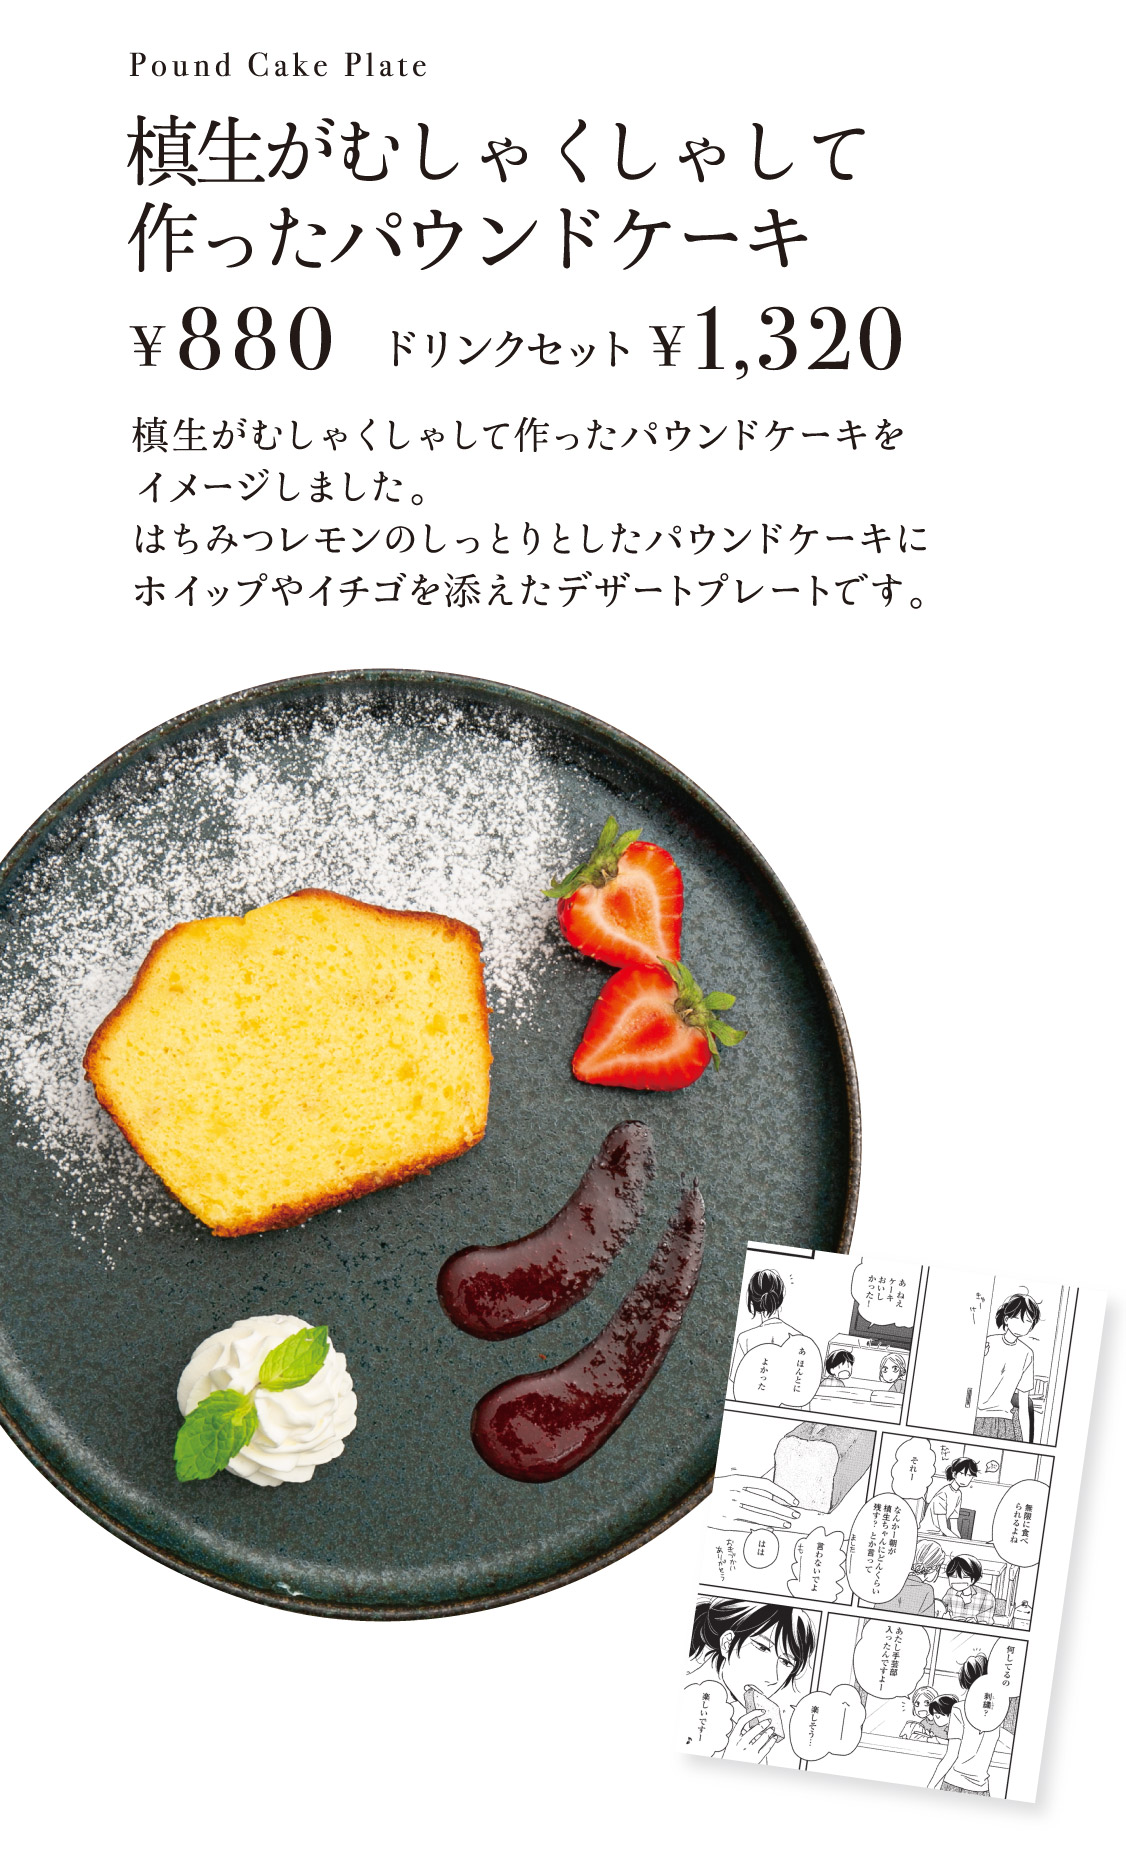 「槙生がむしゃくしゃして作ったパウンドケーキ」【880円／ドリンクセット1,320円】 槙生がむしゃくしゃして作ったパウンドケーキをイメージしました。はちみつレモンのしっとりとしたパウンドケーキにホイップやイチゴを添えたデザートプレートです。